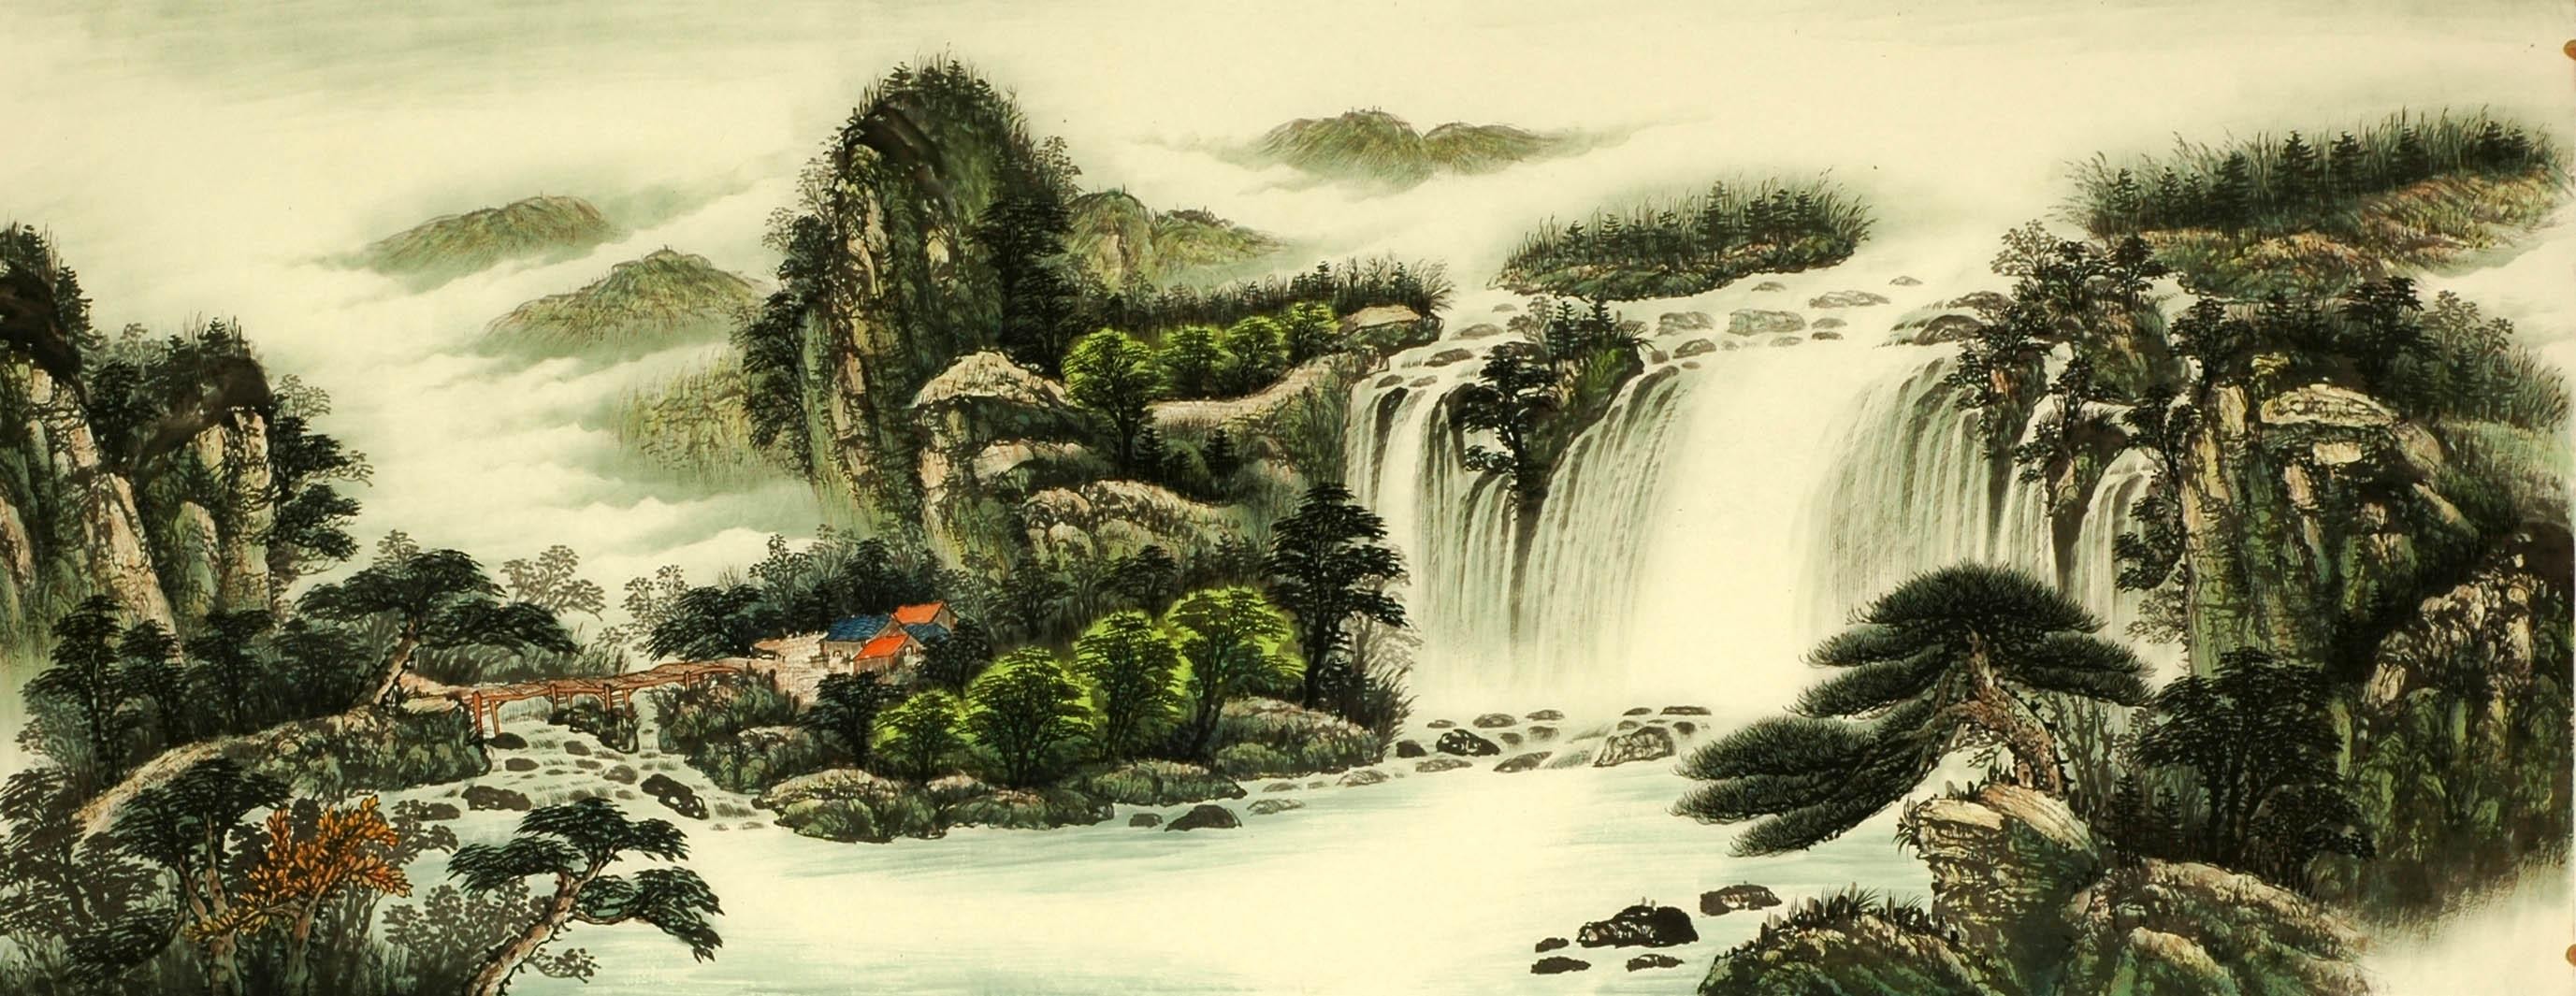 Chinese Landscape Painting - CNAG008245